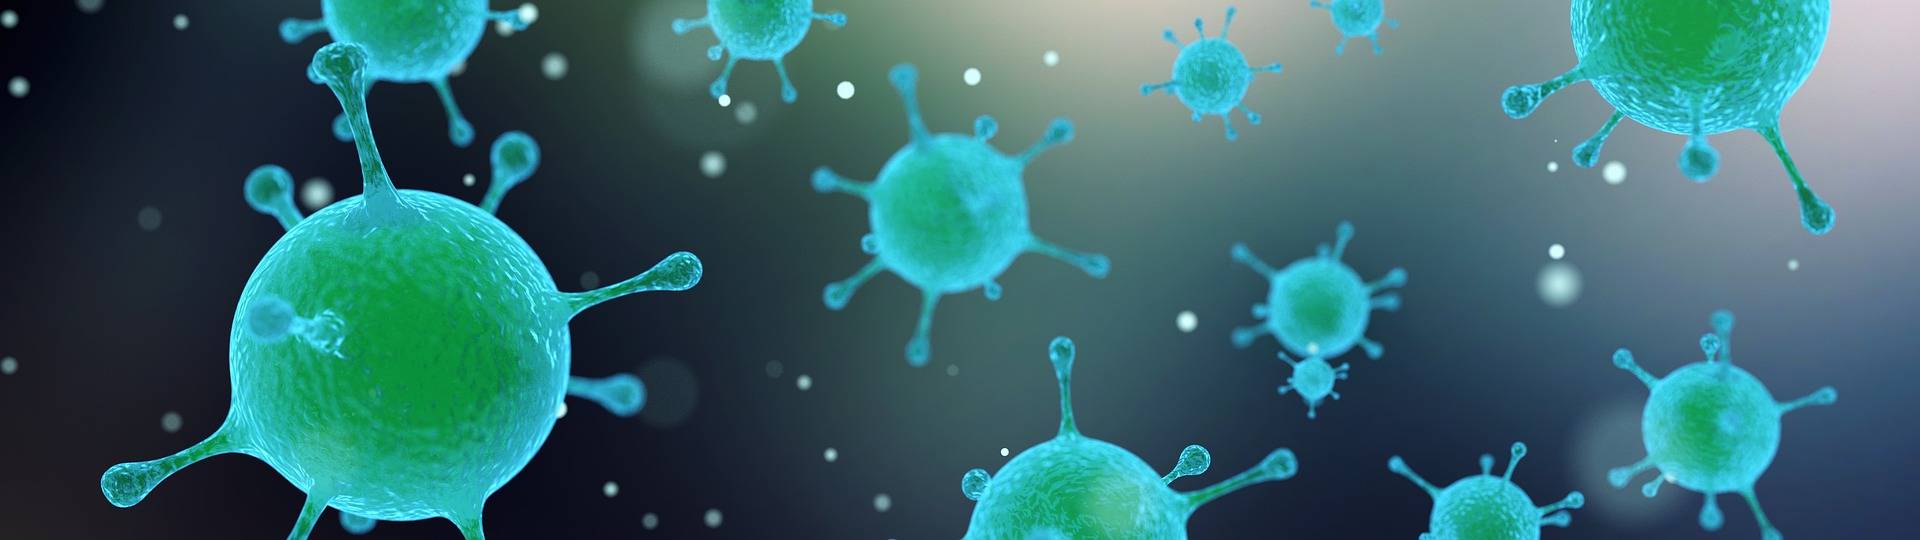 Wie vermehren sich Viren?